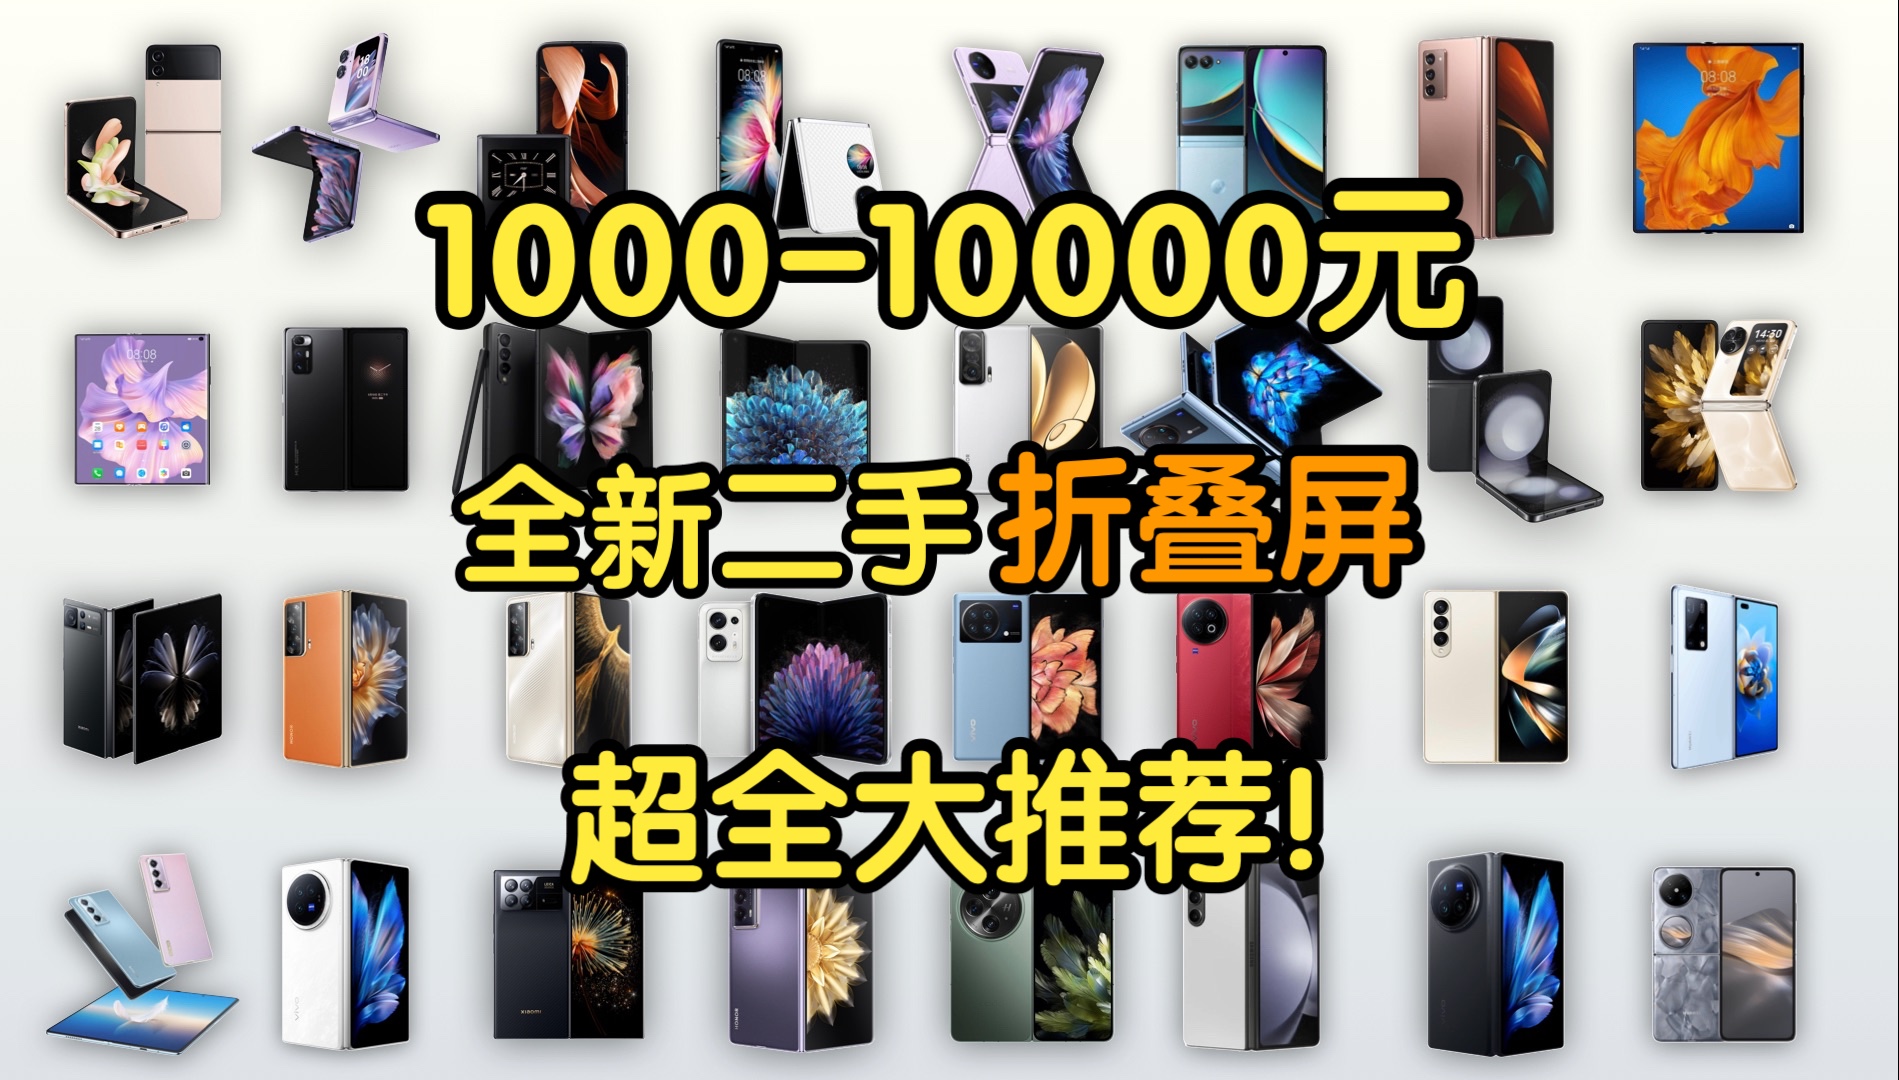 【Caibao】1000-10000元全价位折叠屏手机大推荐！全新二手32款超全覆盖！性价比超高选折叠屏必看！